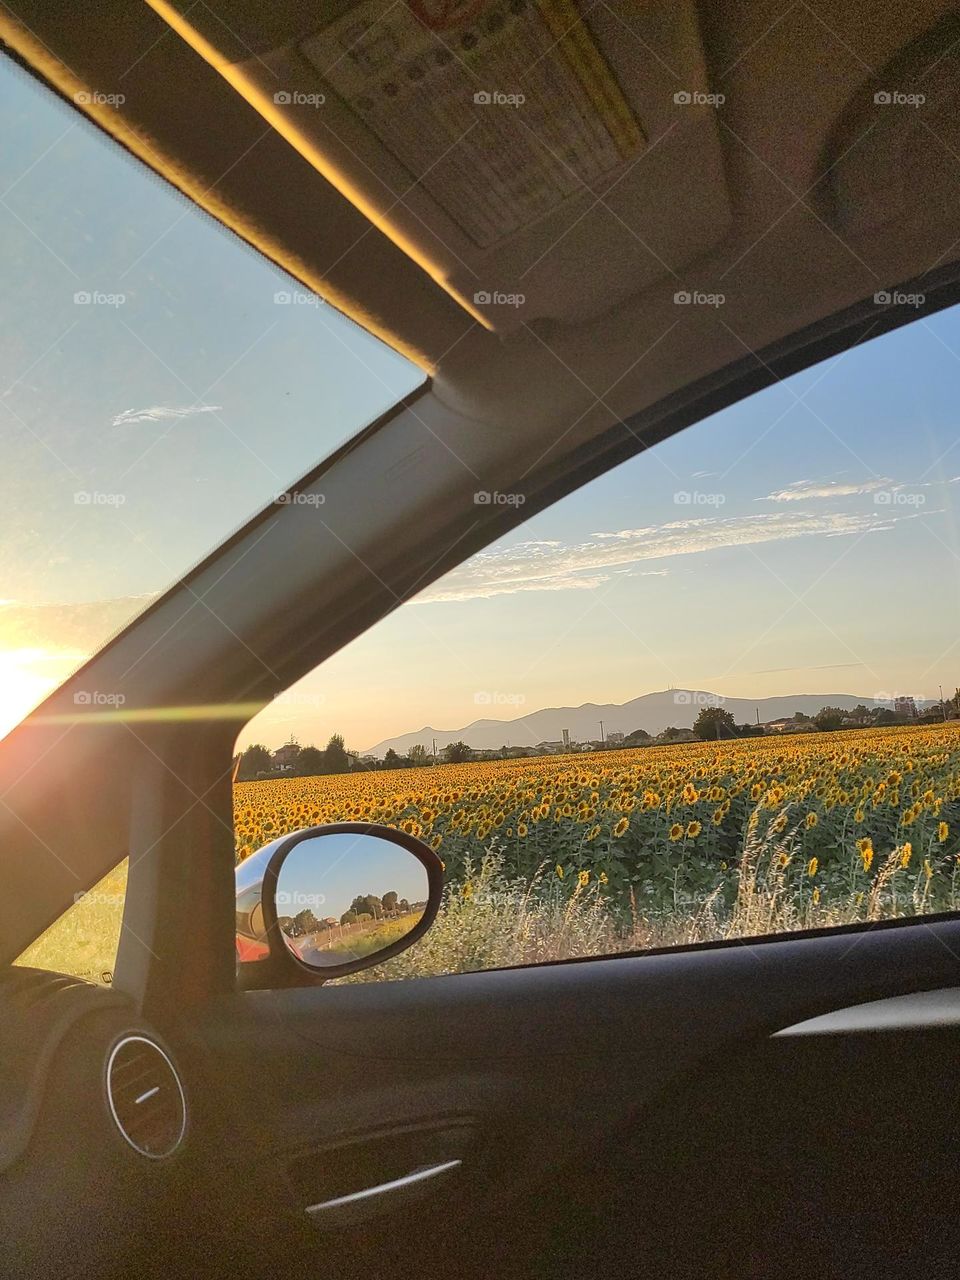 Sunset sunflowers